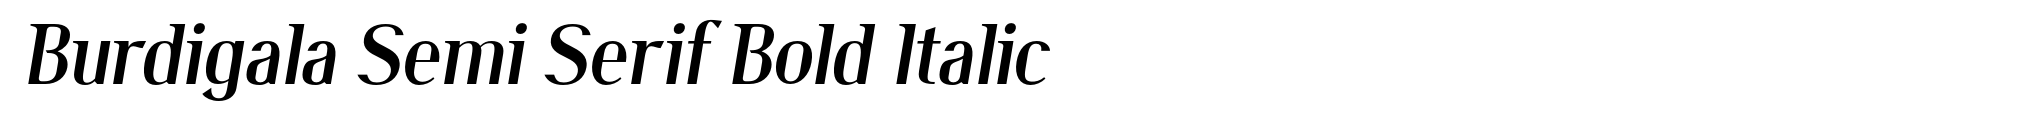 Burdigala Semi Serif Bold Italic image